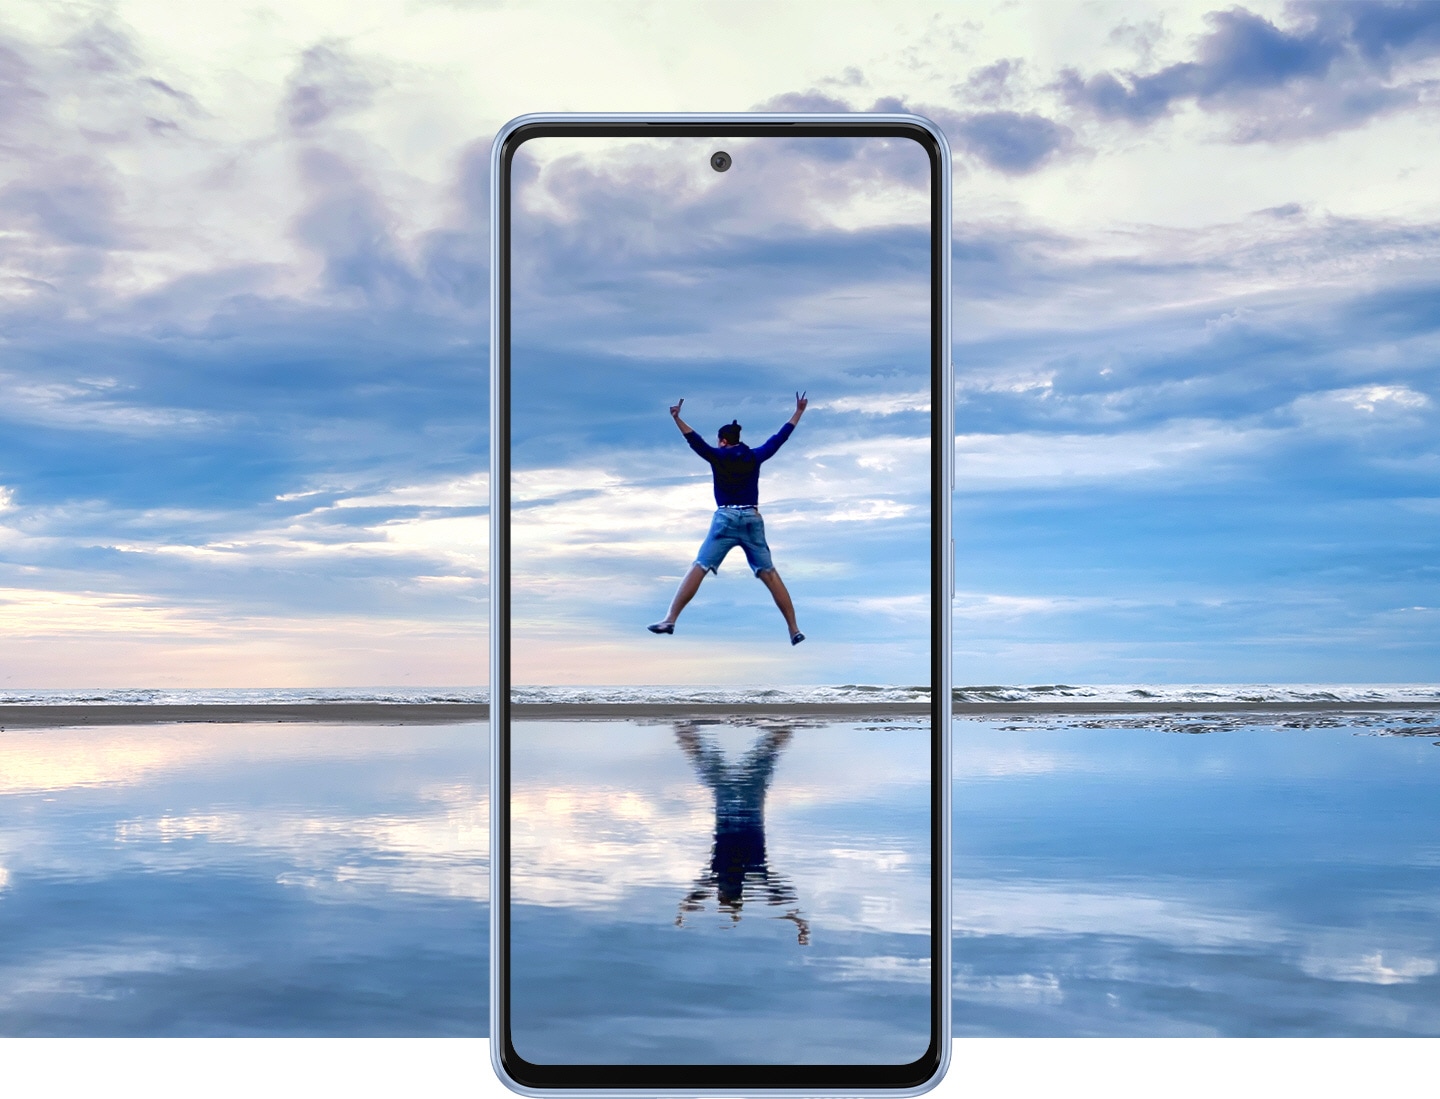 Galaxy A53 5G prikazan sprijeda u prekrasnom krajoliku koji ulazi u zaslon. Prikazuje prostrano nebo nad vodom koja ga odražava na tankom obzoru koji se rastvara na sredini. U sredini zaslona muškarac skače u zrak dok su mu ruke i noge raširene, a na vodi se prikazuje njegov odraz. 